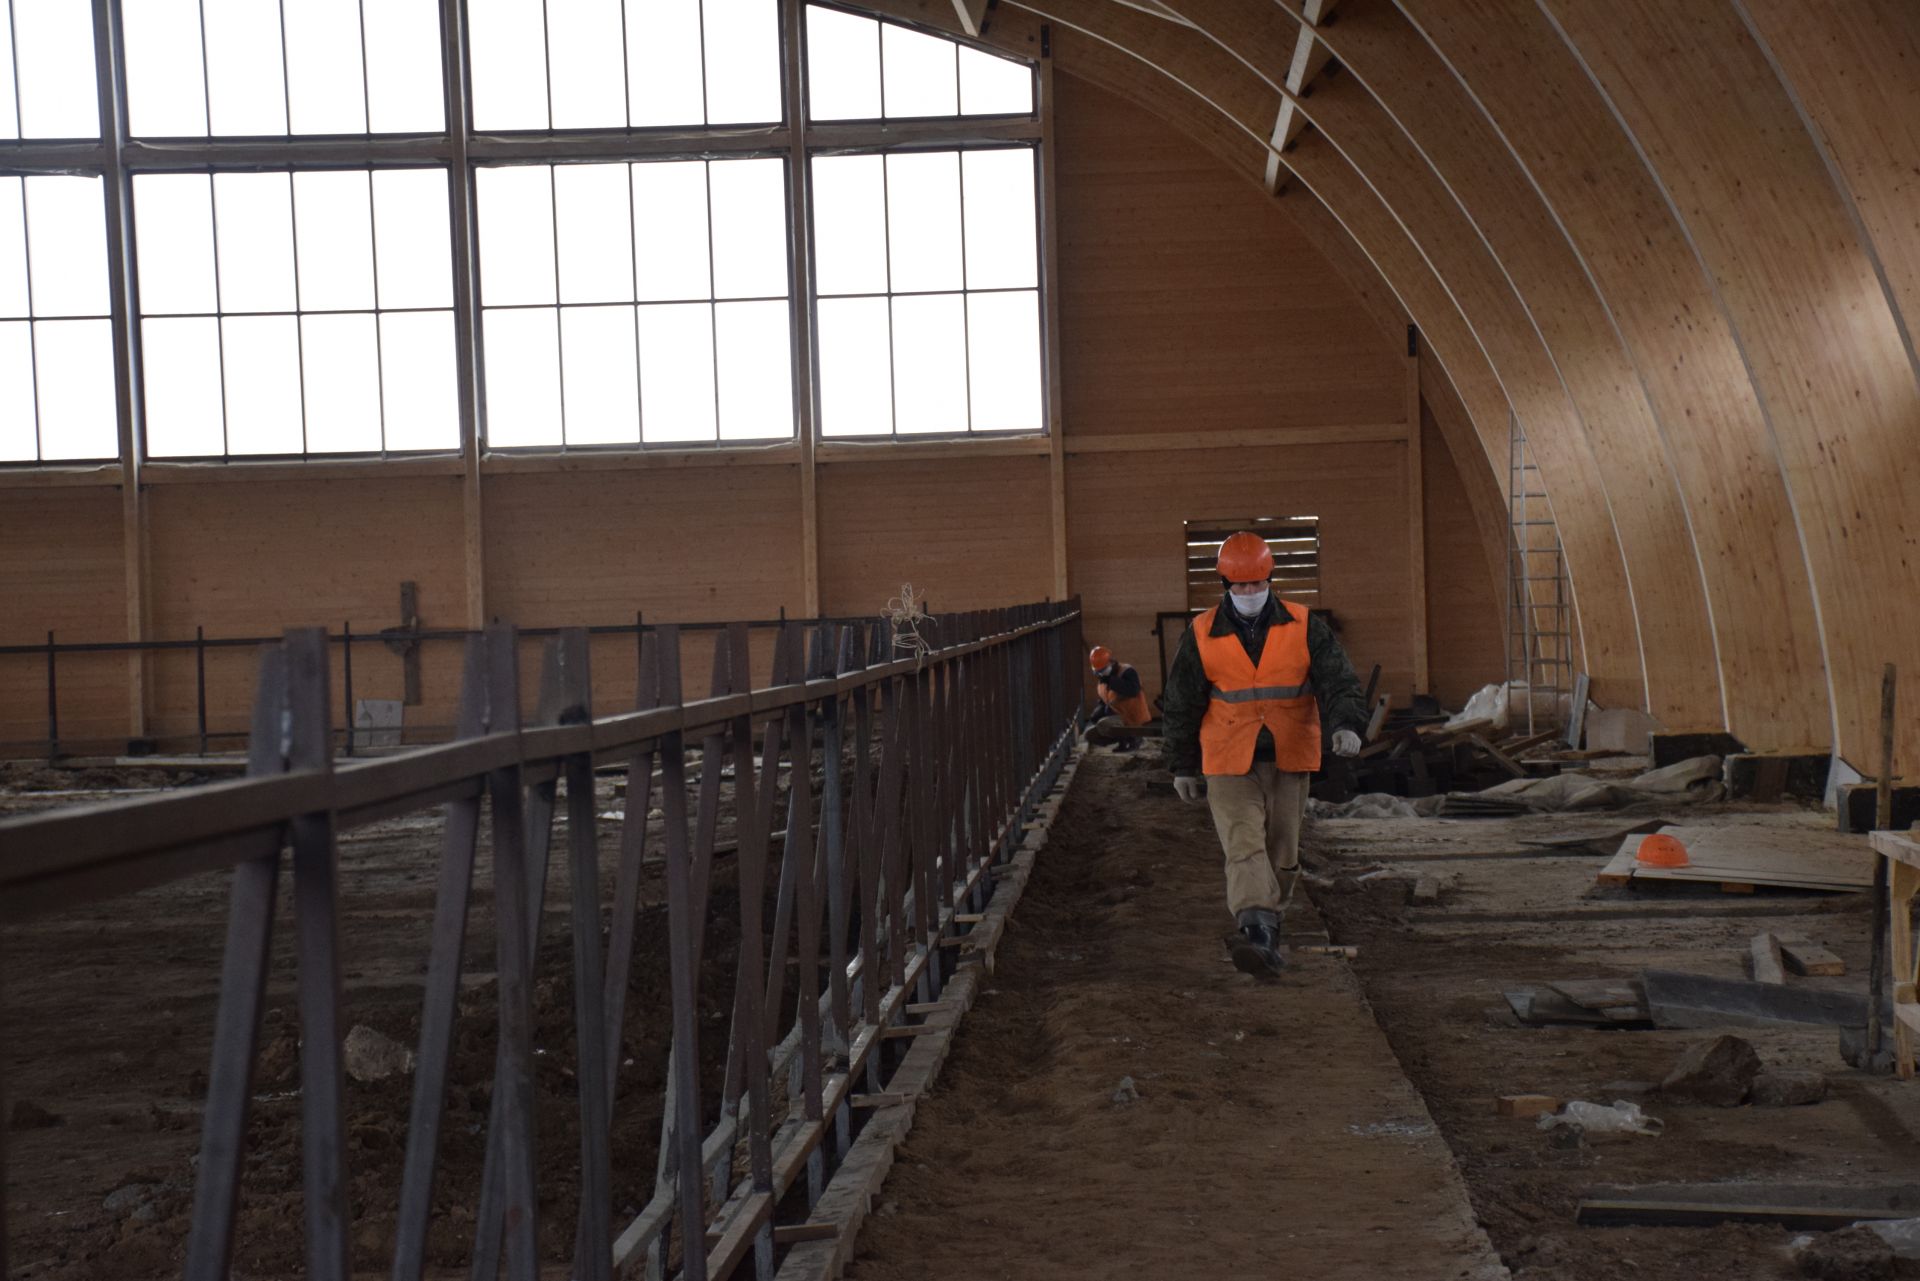 Алмаз Ахметшин ознакомился со строительными работами на Нурлатском конном заводе